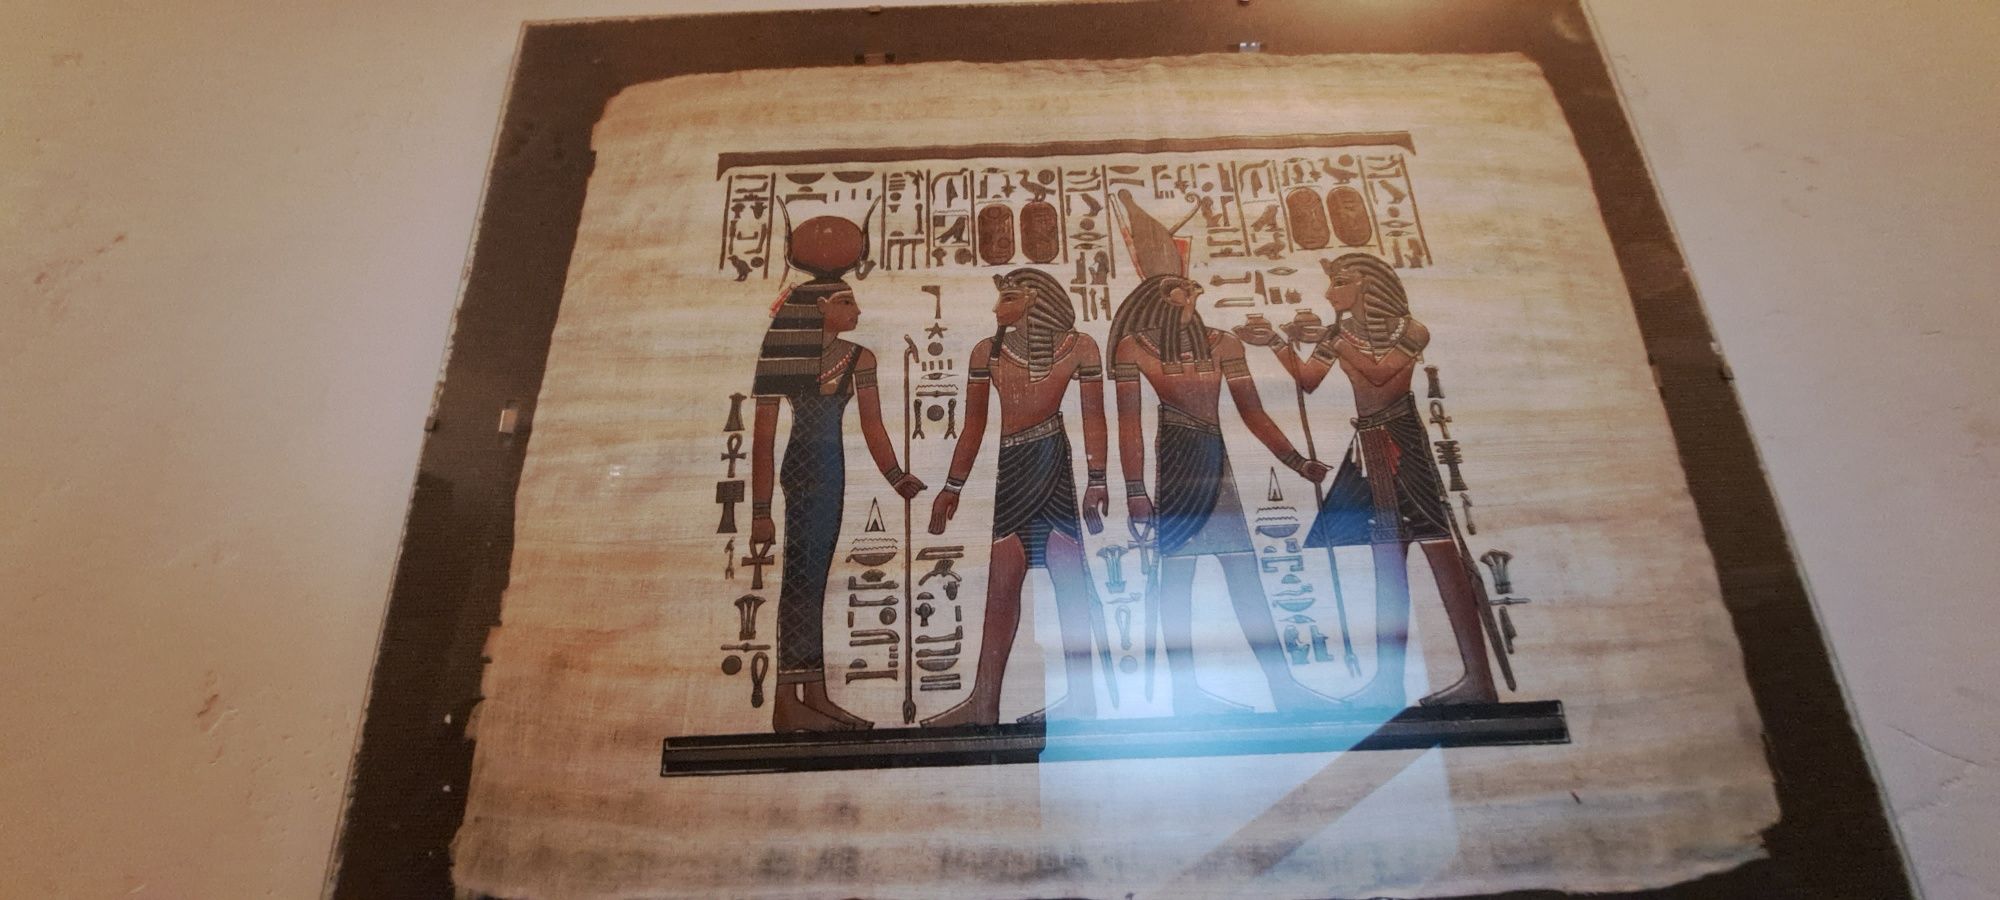 Egipt obraz papirus wystrój obrazki różne